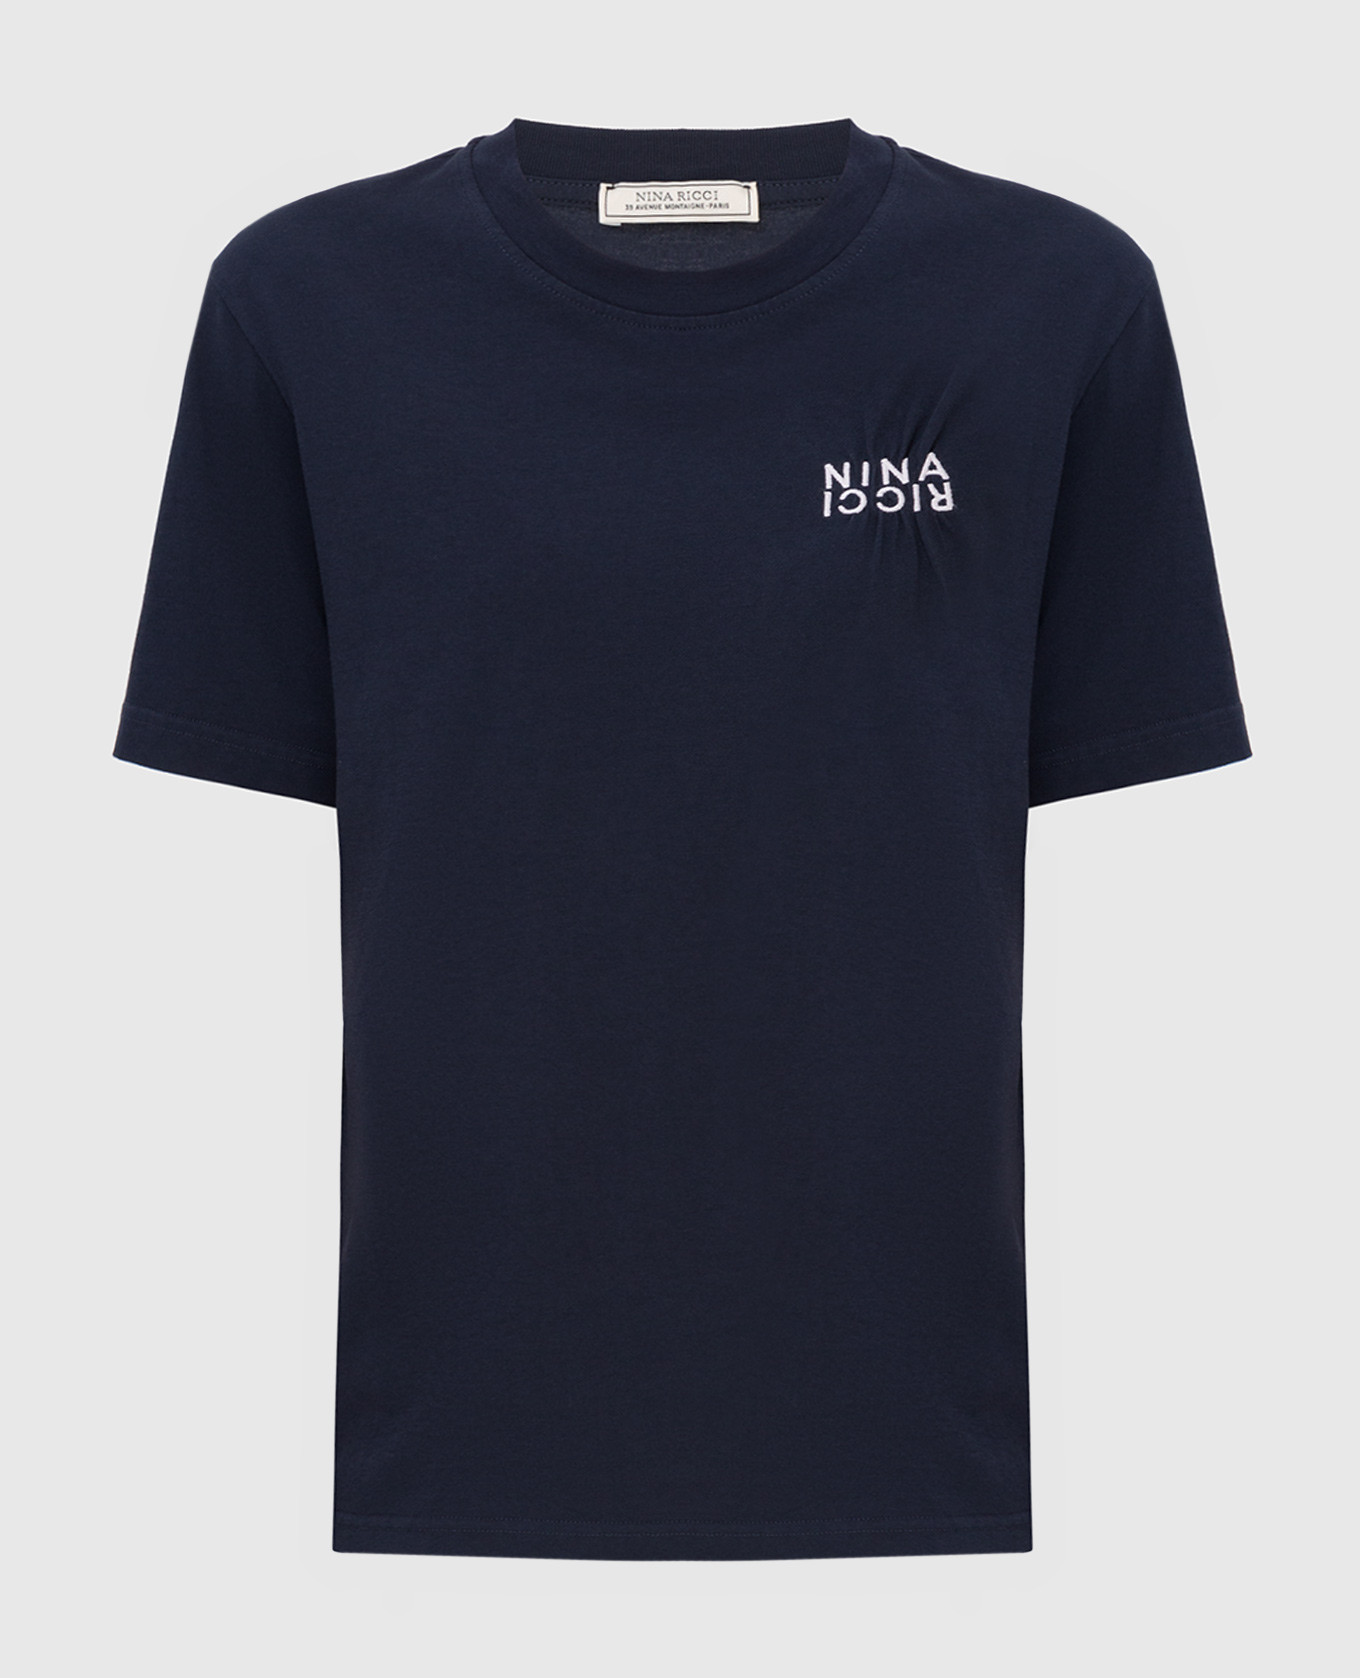 Темно-синяя футболка с вышивкой логотипа NINA RICCI